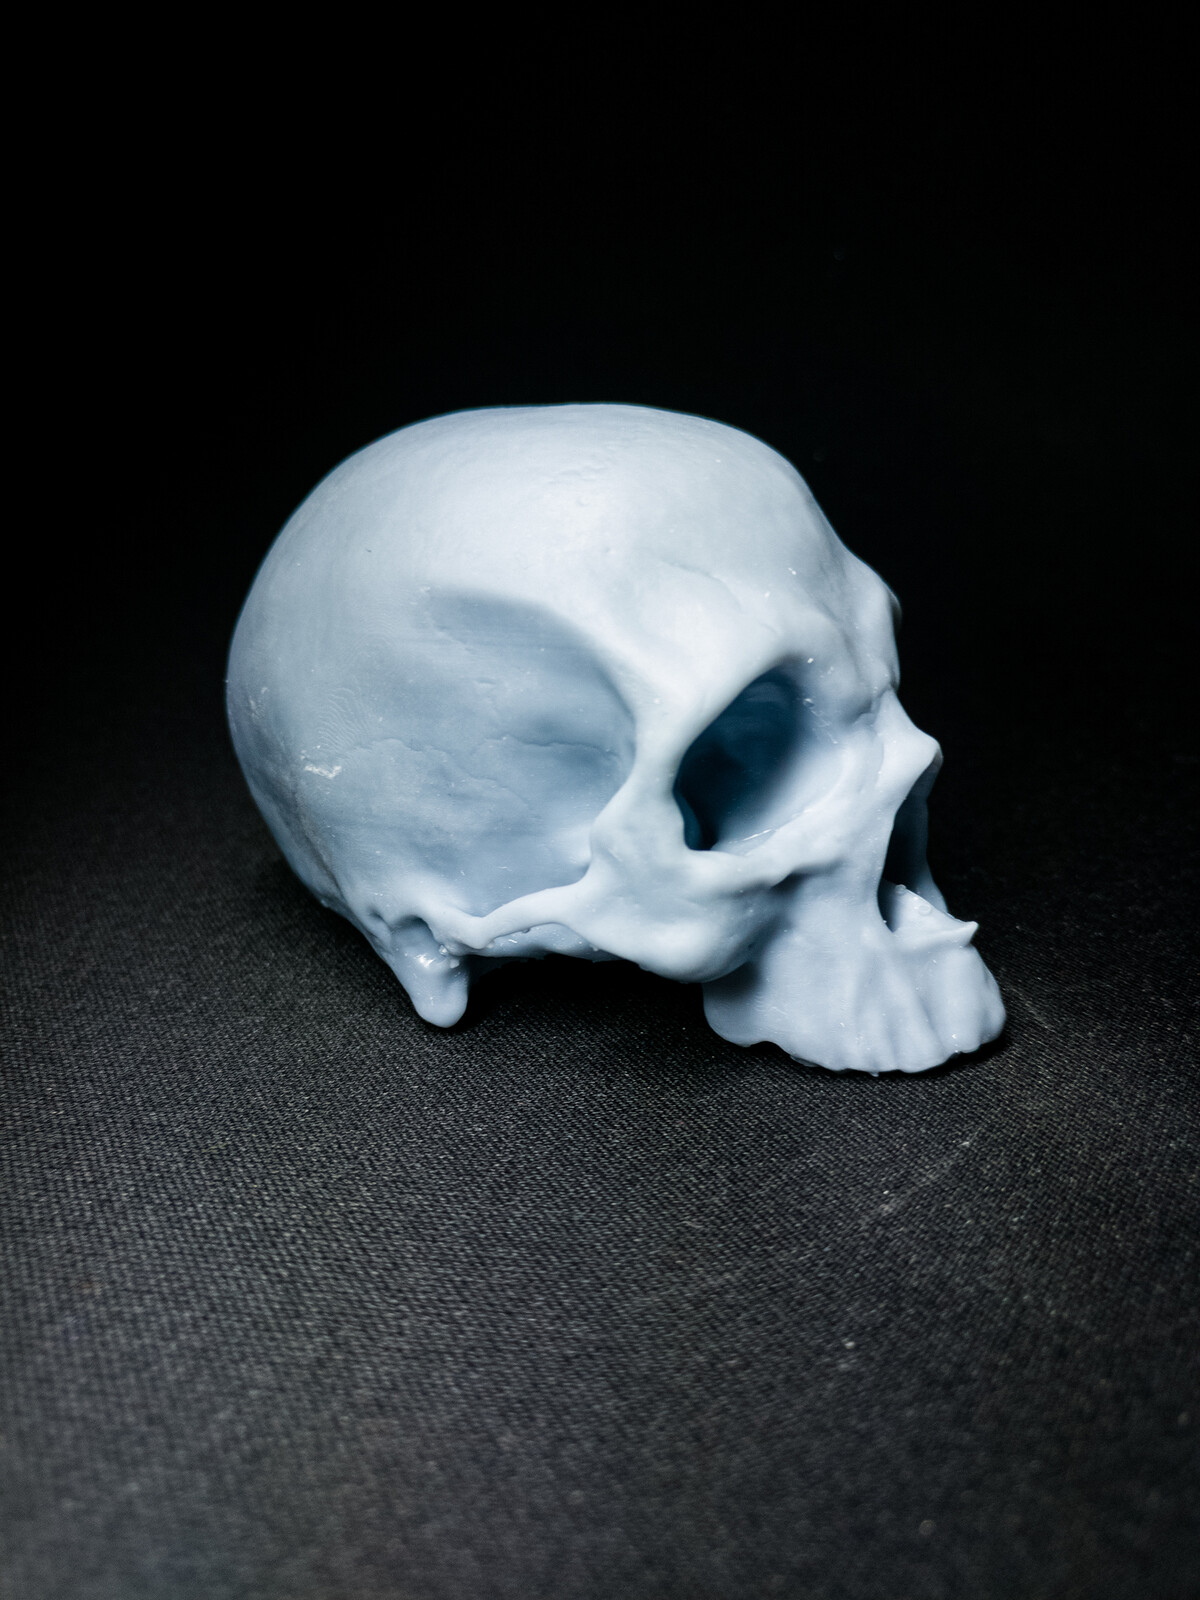 3D printed version [WIP]